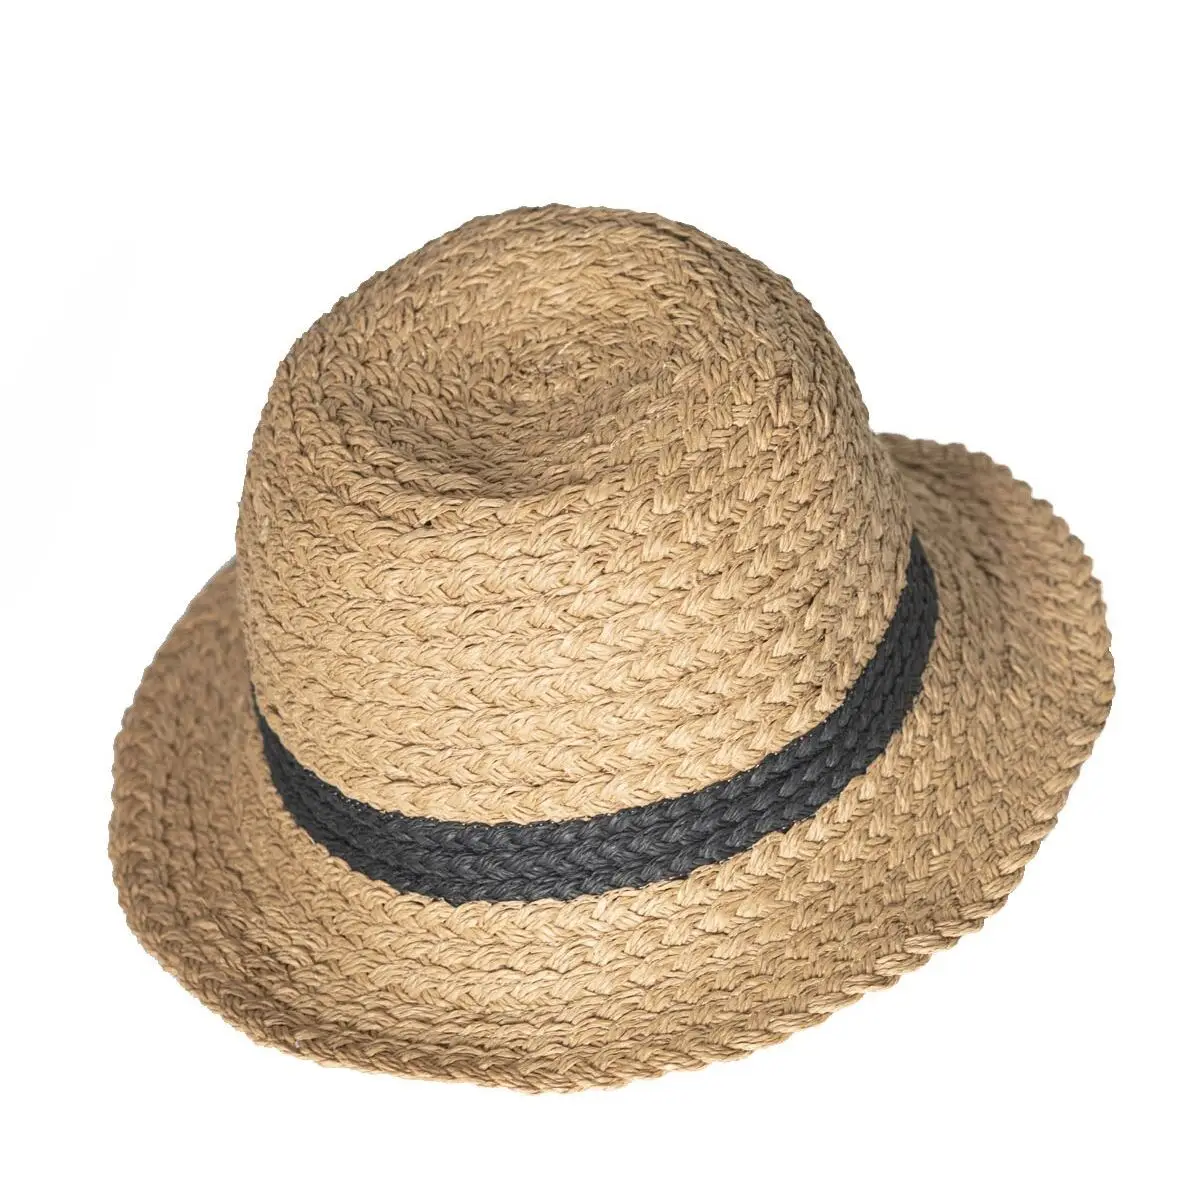 В полоску; С рельефным рисунком, фетровая шляпка шерстяная Для женщин соломенная шляпа пляжная шляпа от солнца Кепки женская летняя шляпа с ... от AliExpress RU&CIS NEW